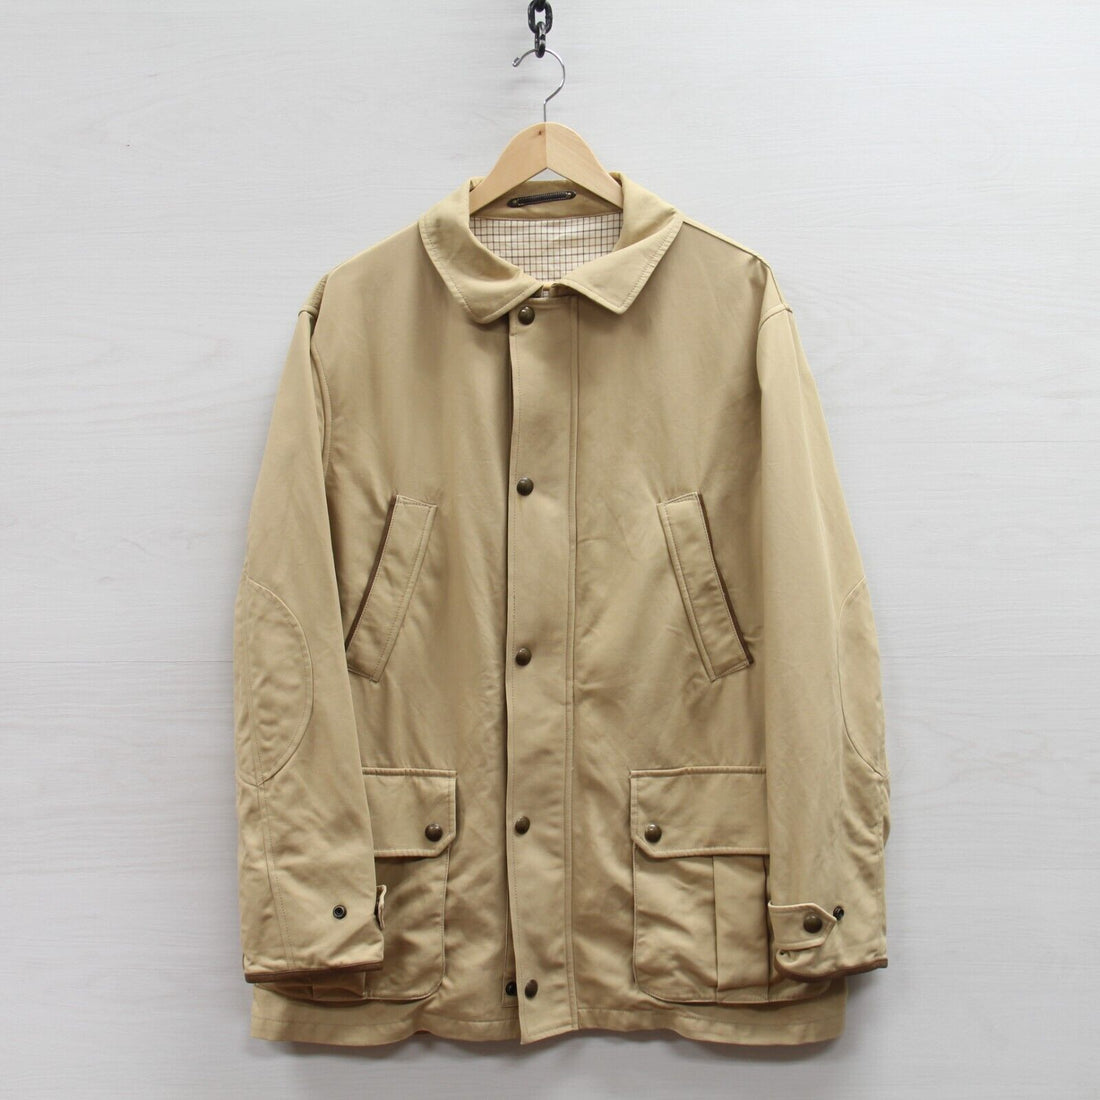 Vintage Polo Ralph Lauren Coat Jacket Size Large Beige Tan Cotton